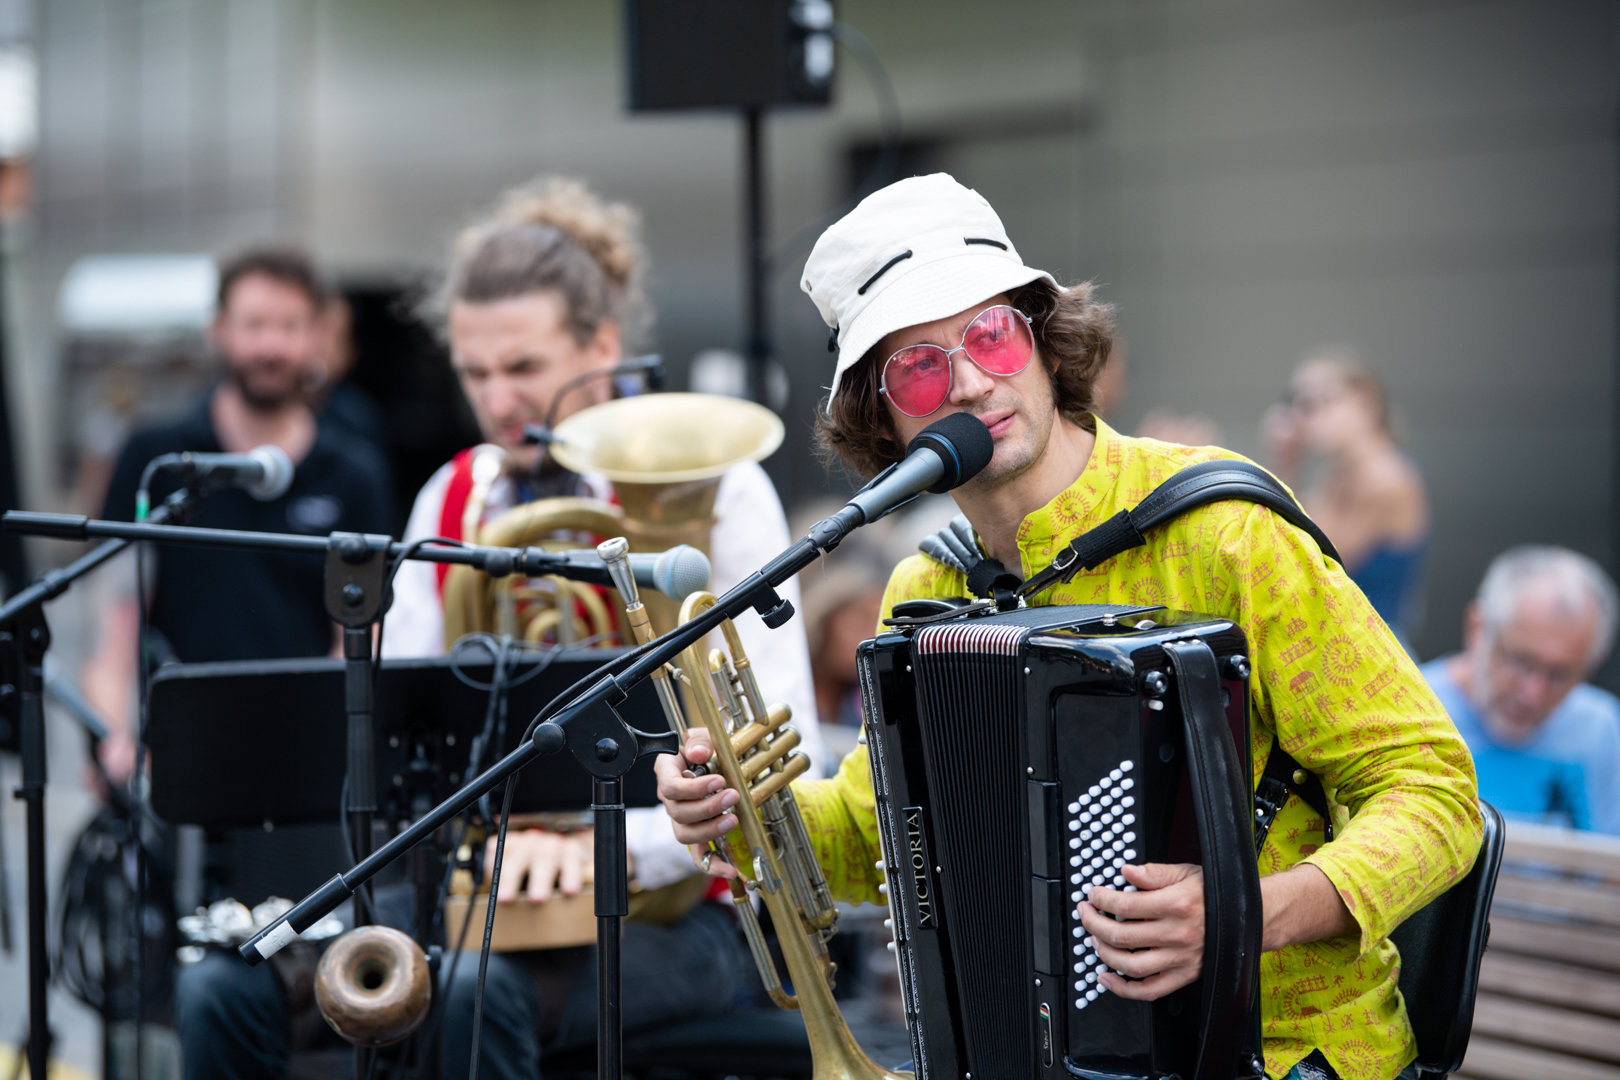 Zwei Musiker mit Mikros, mehreren Instrumenten: Akkordeon, Trompete, Tuba. Ein Musiker trägt einen Hut und eine rosarote Sonnenbrille.